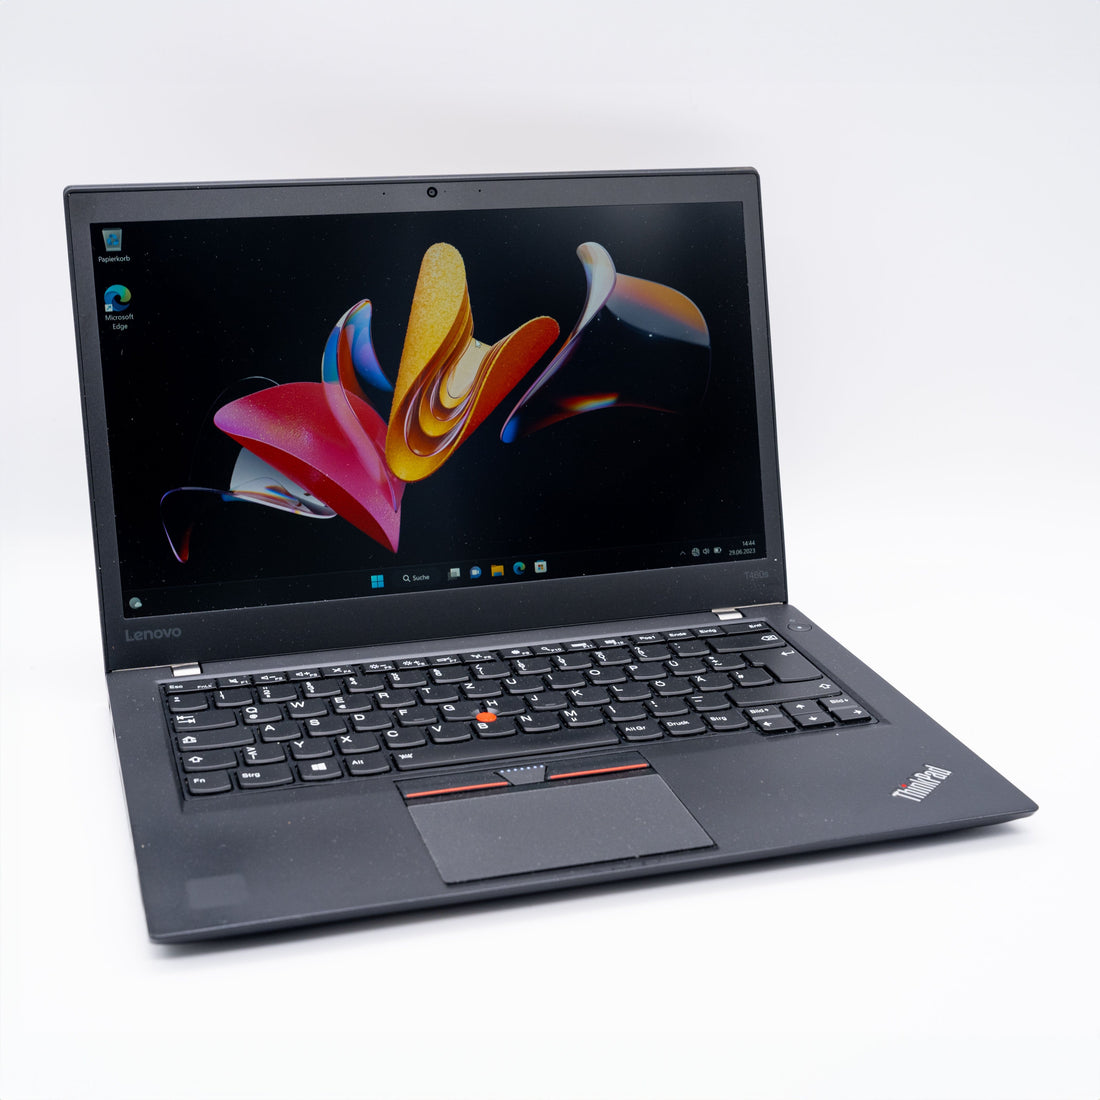 Lenovo ThinkPad T460s Intel i7-6600U 12GB DDR4 256GB SSD QWERTY Laptops Notebook-Pro Intel Core i7-6600U 12GB DDR4 256GB